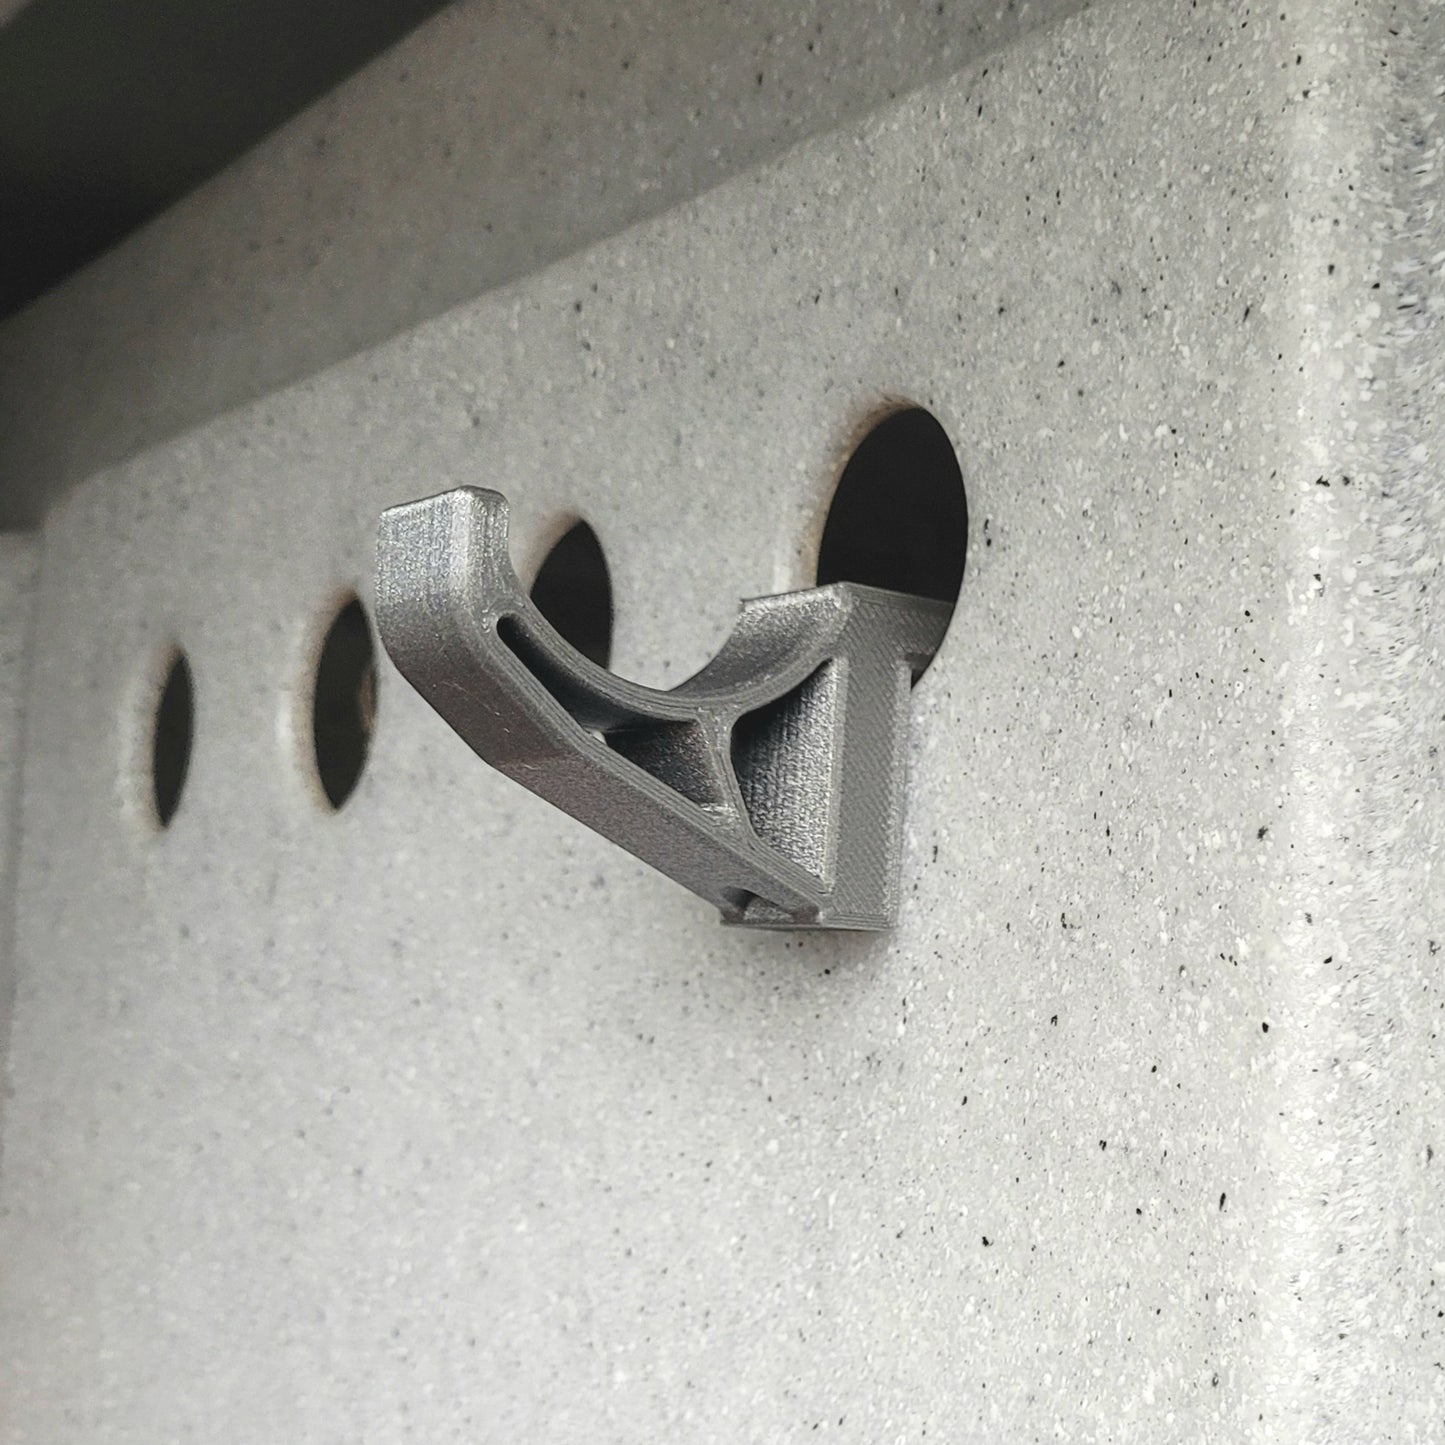 Metallic grey hook shown on an XL Ruffland Kennel 